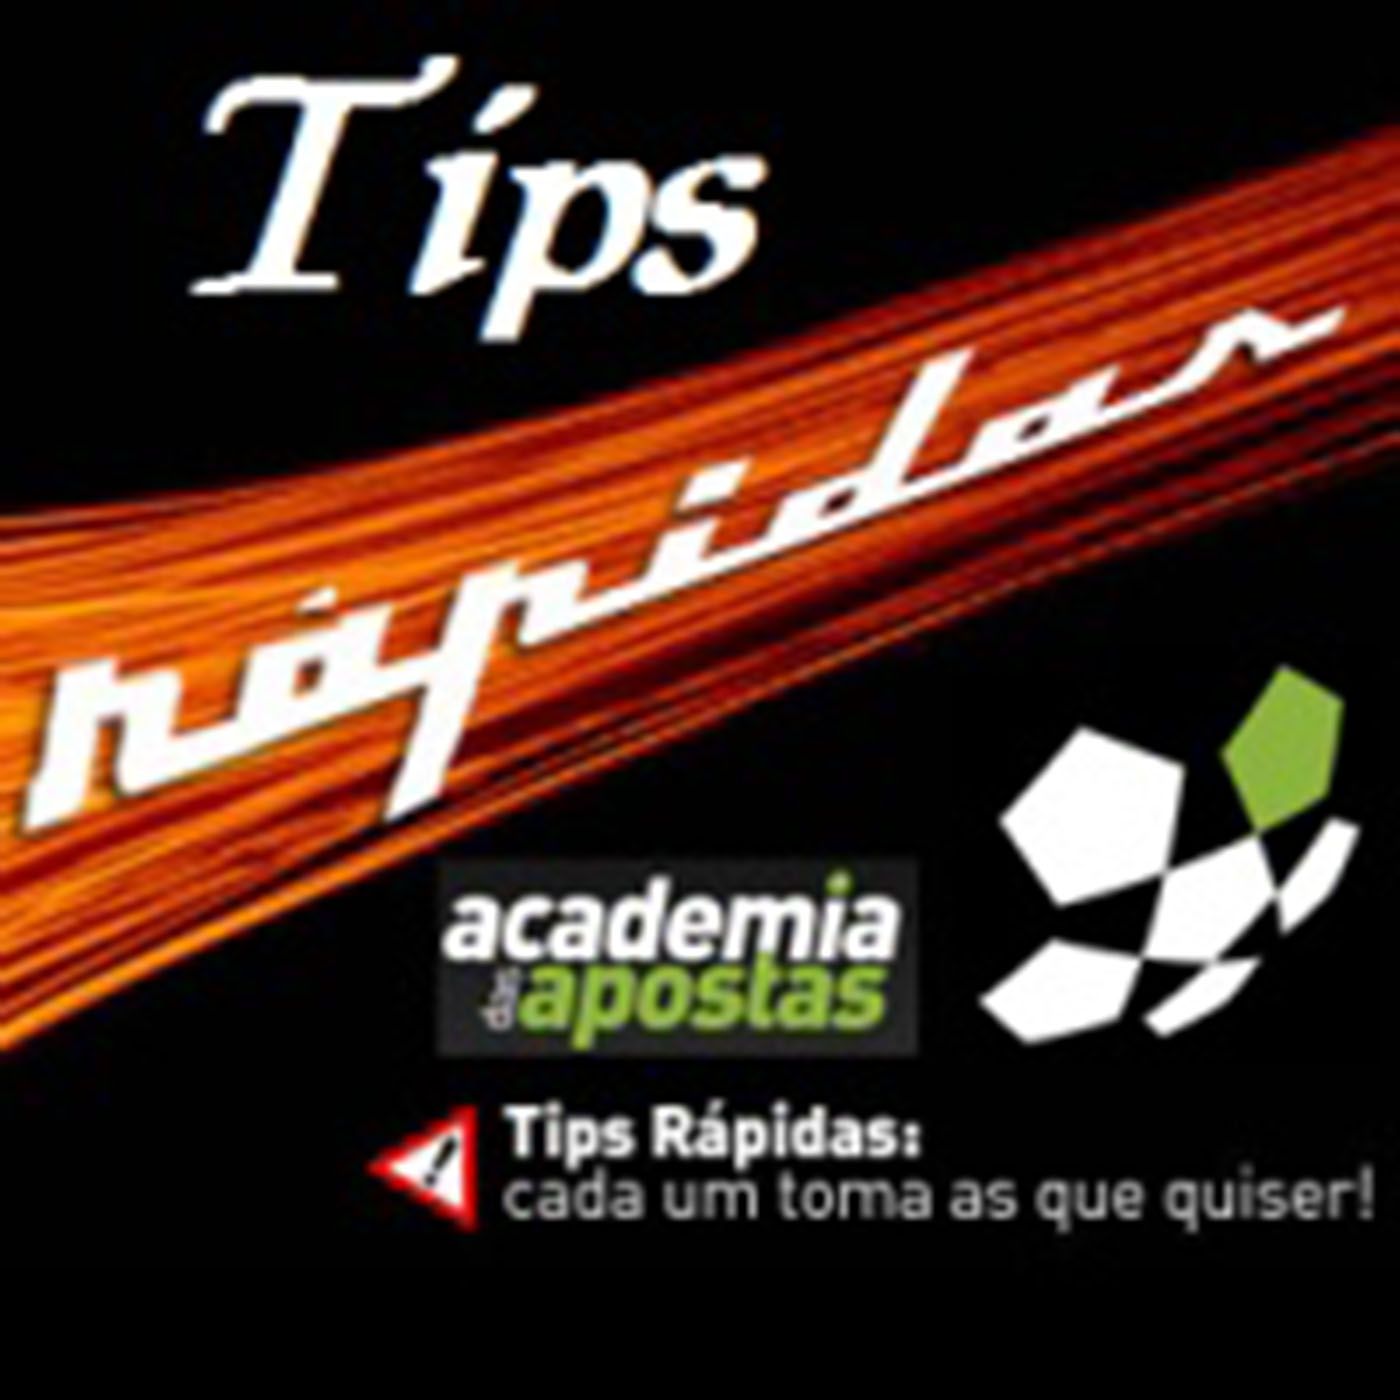 Tips Rápidas - Academia TV2